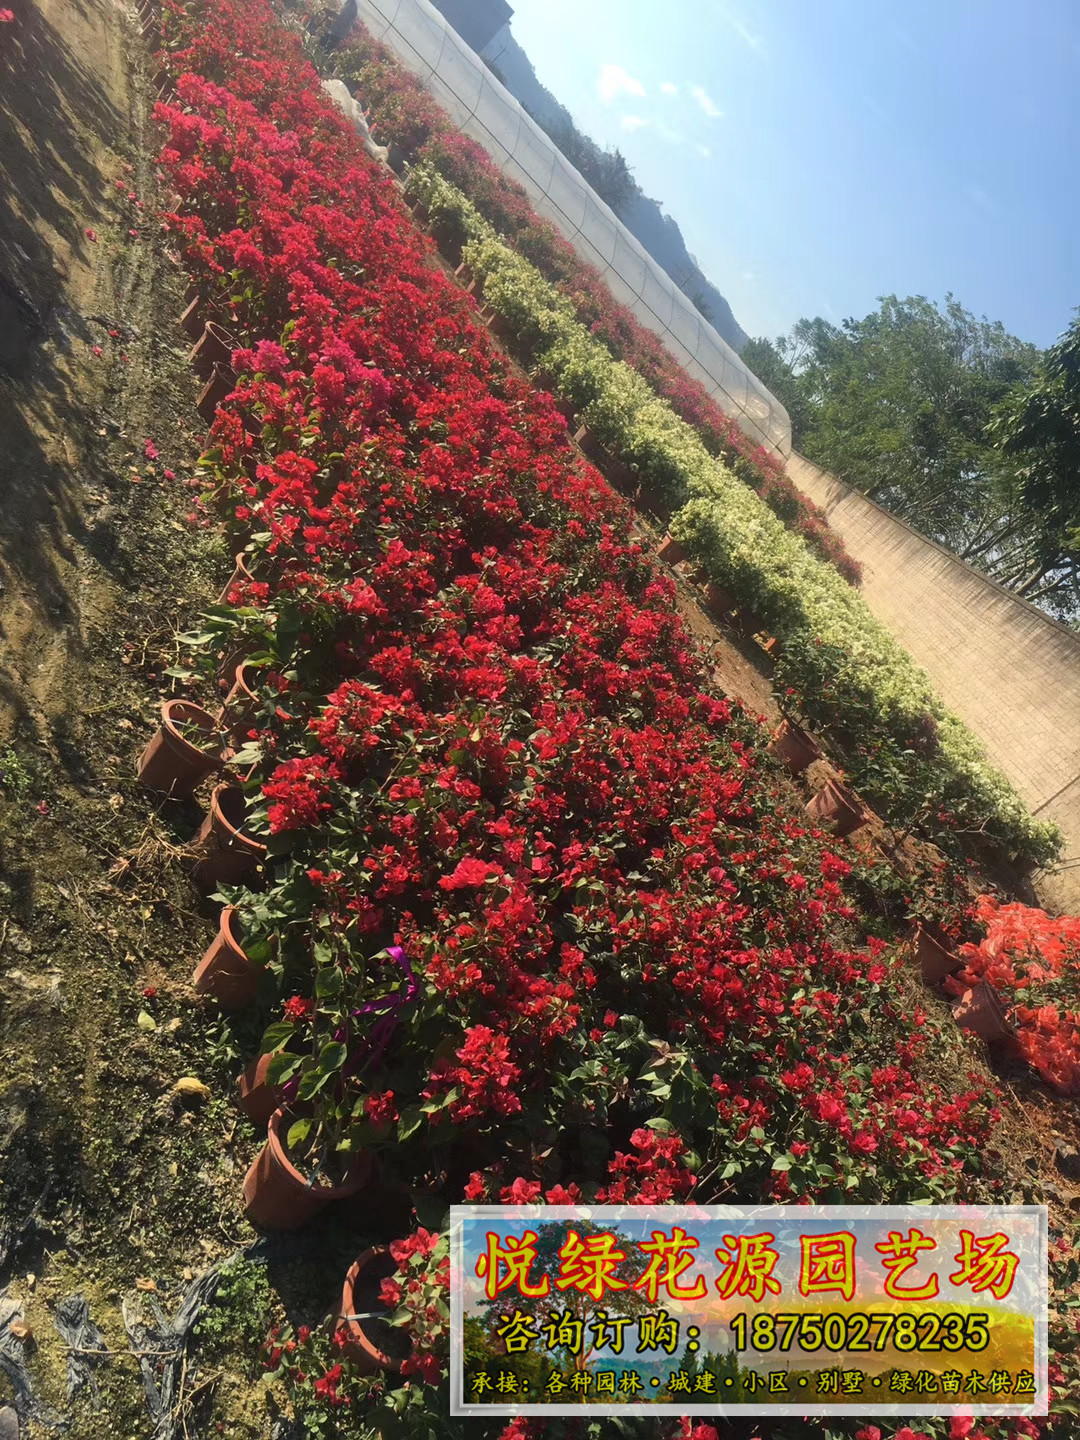 三角梅福建漳州基地种植供应三角梅 自产自销 品种多样 颜色可选图片